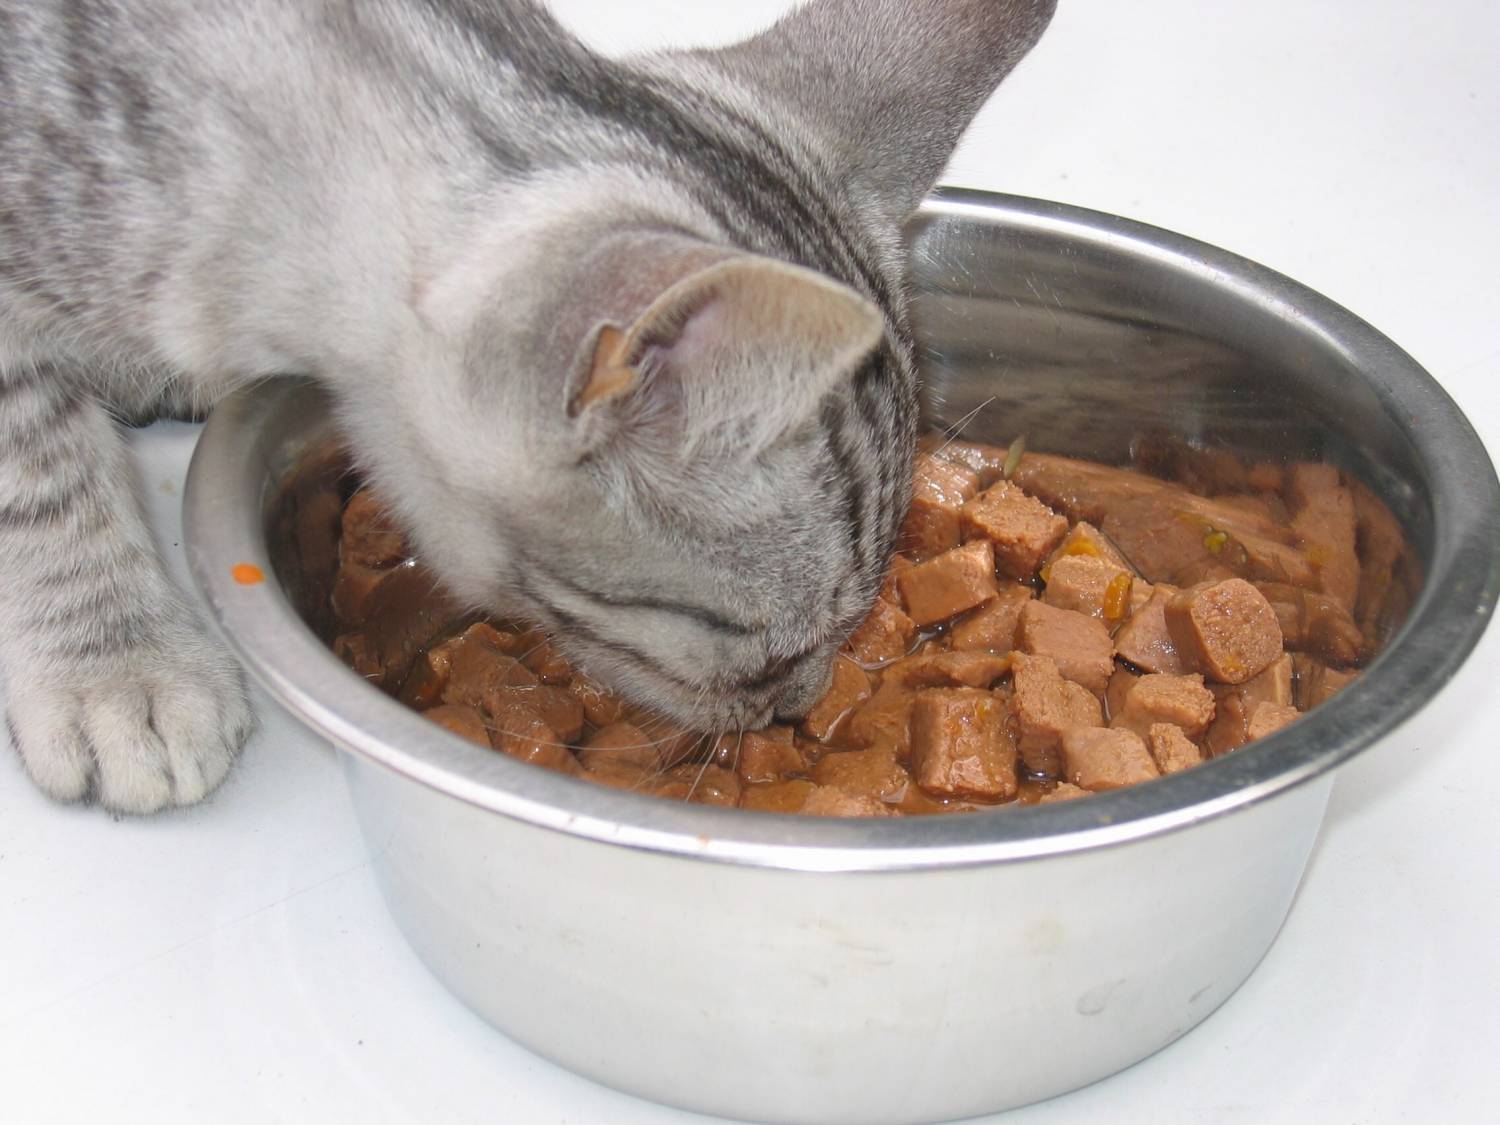 Как отучить кошку от сухого корма: лучшие методы при смене рациона